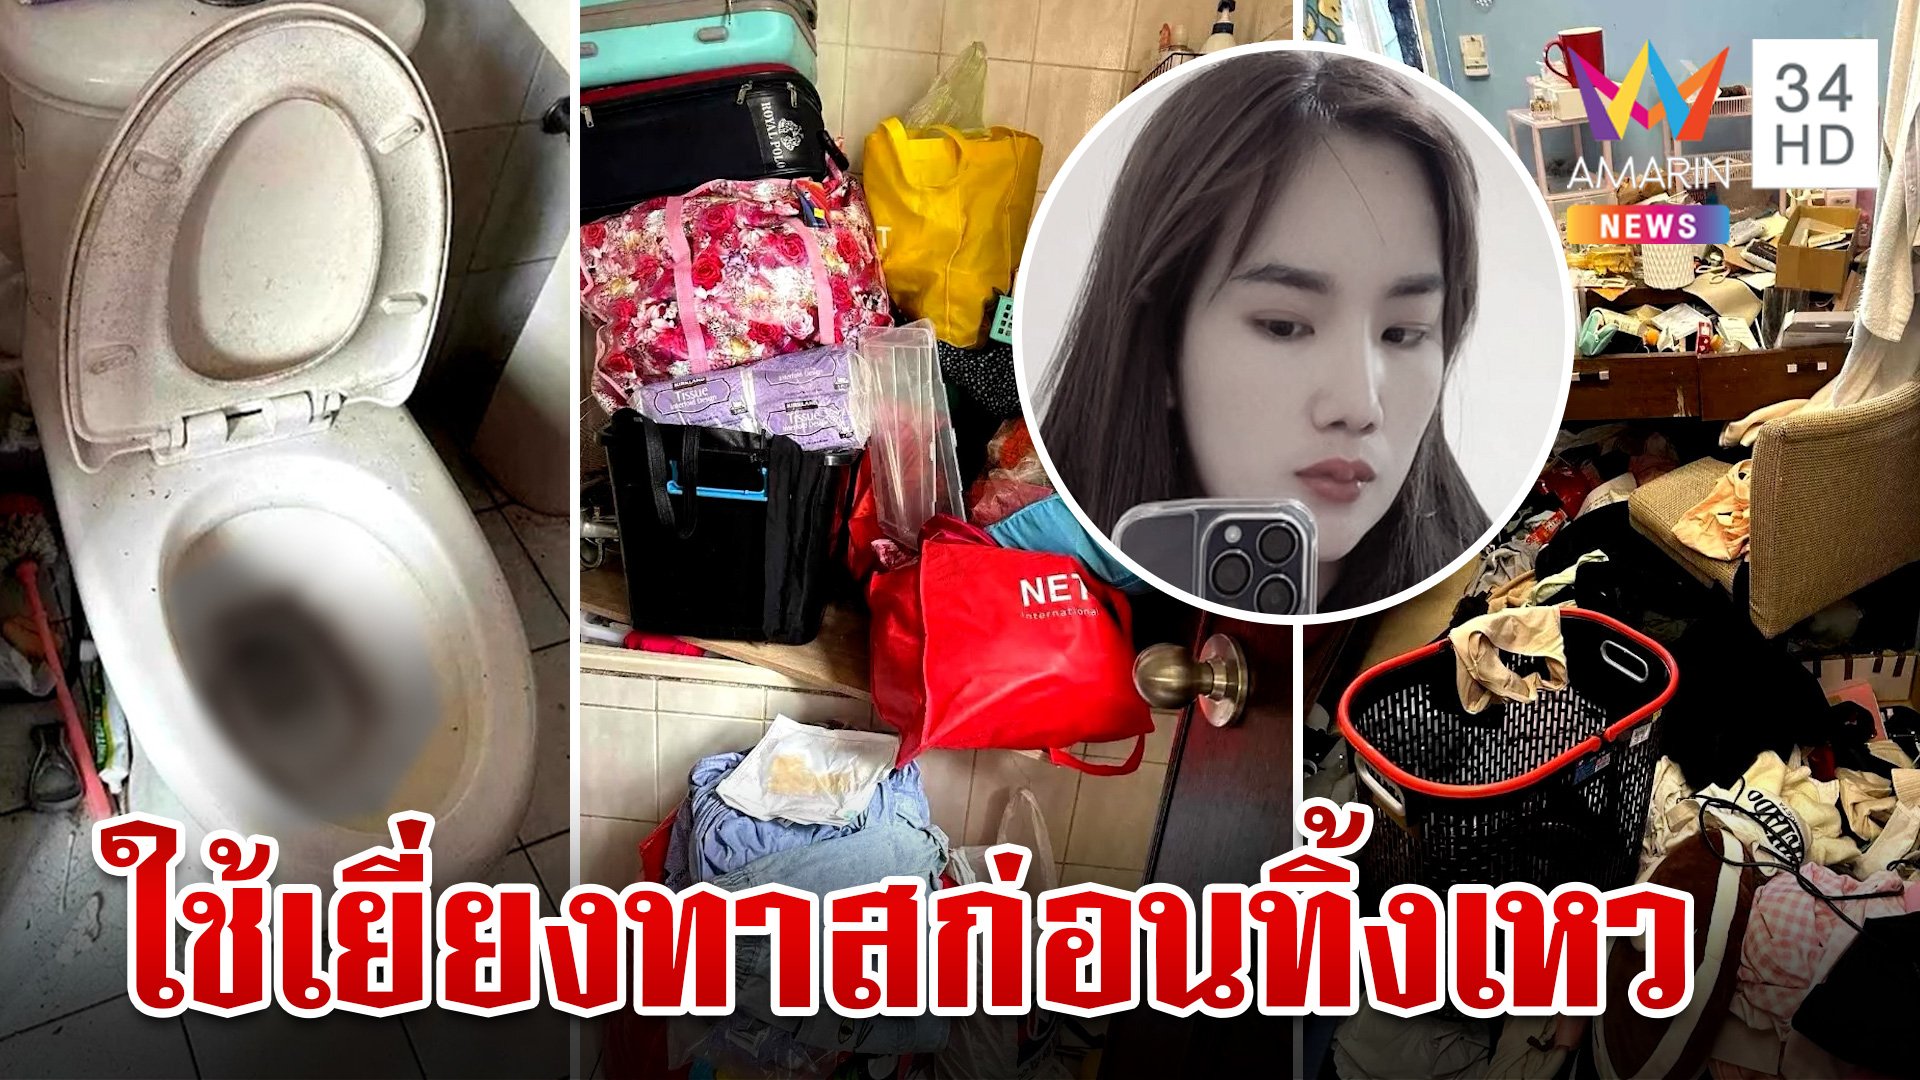 แฉนายจ้างเลือดเย็นลวงสาวไทยทิ้งเหว สลดชะตาสุดลำบากถูกกระทำสารพัด  | ทุบโต๊ะข่าว | 13 พ.ค. 67 | AMARIN TVHD34